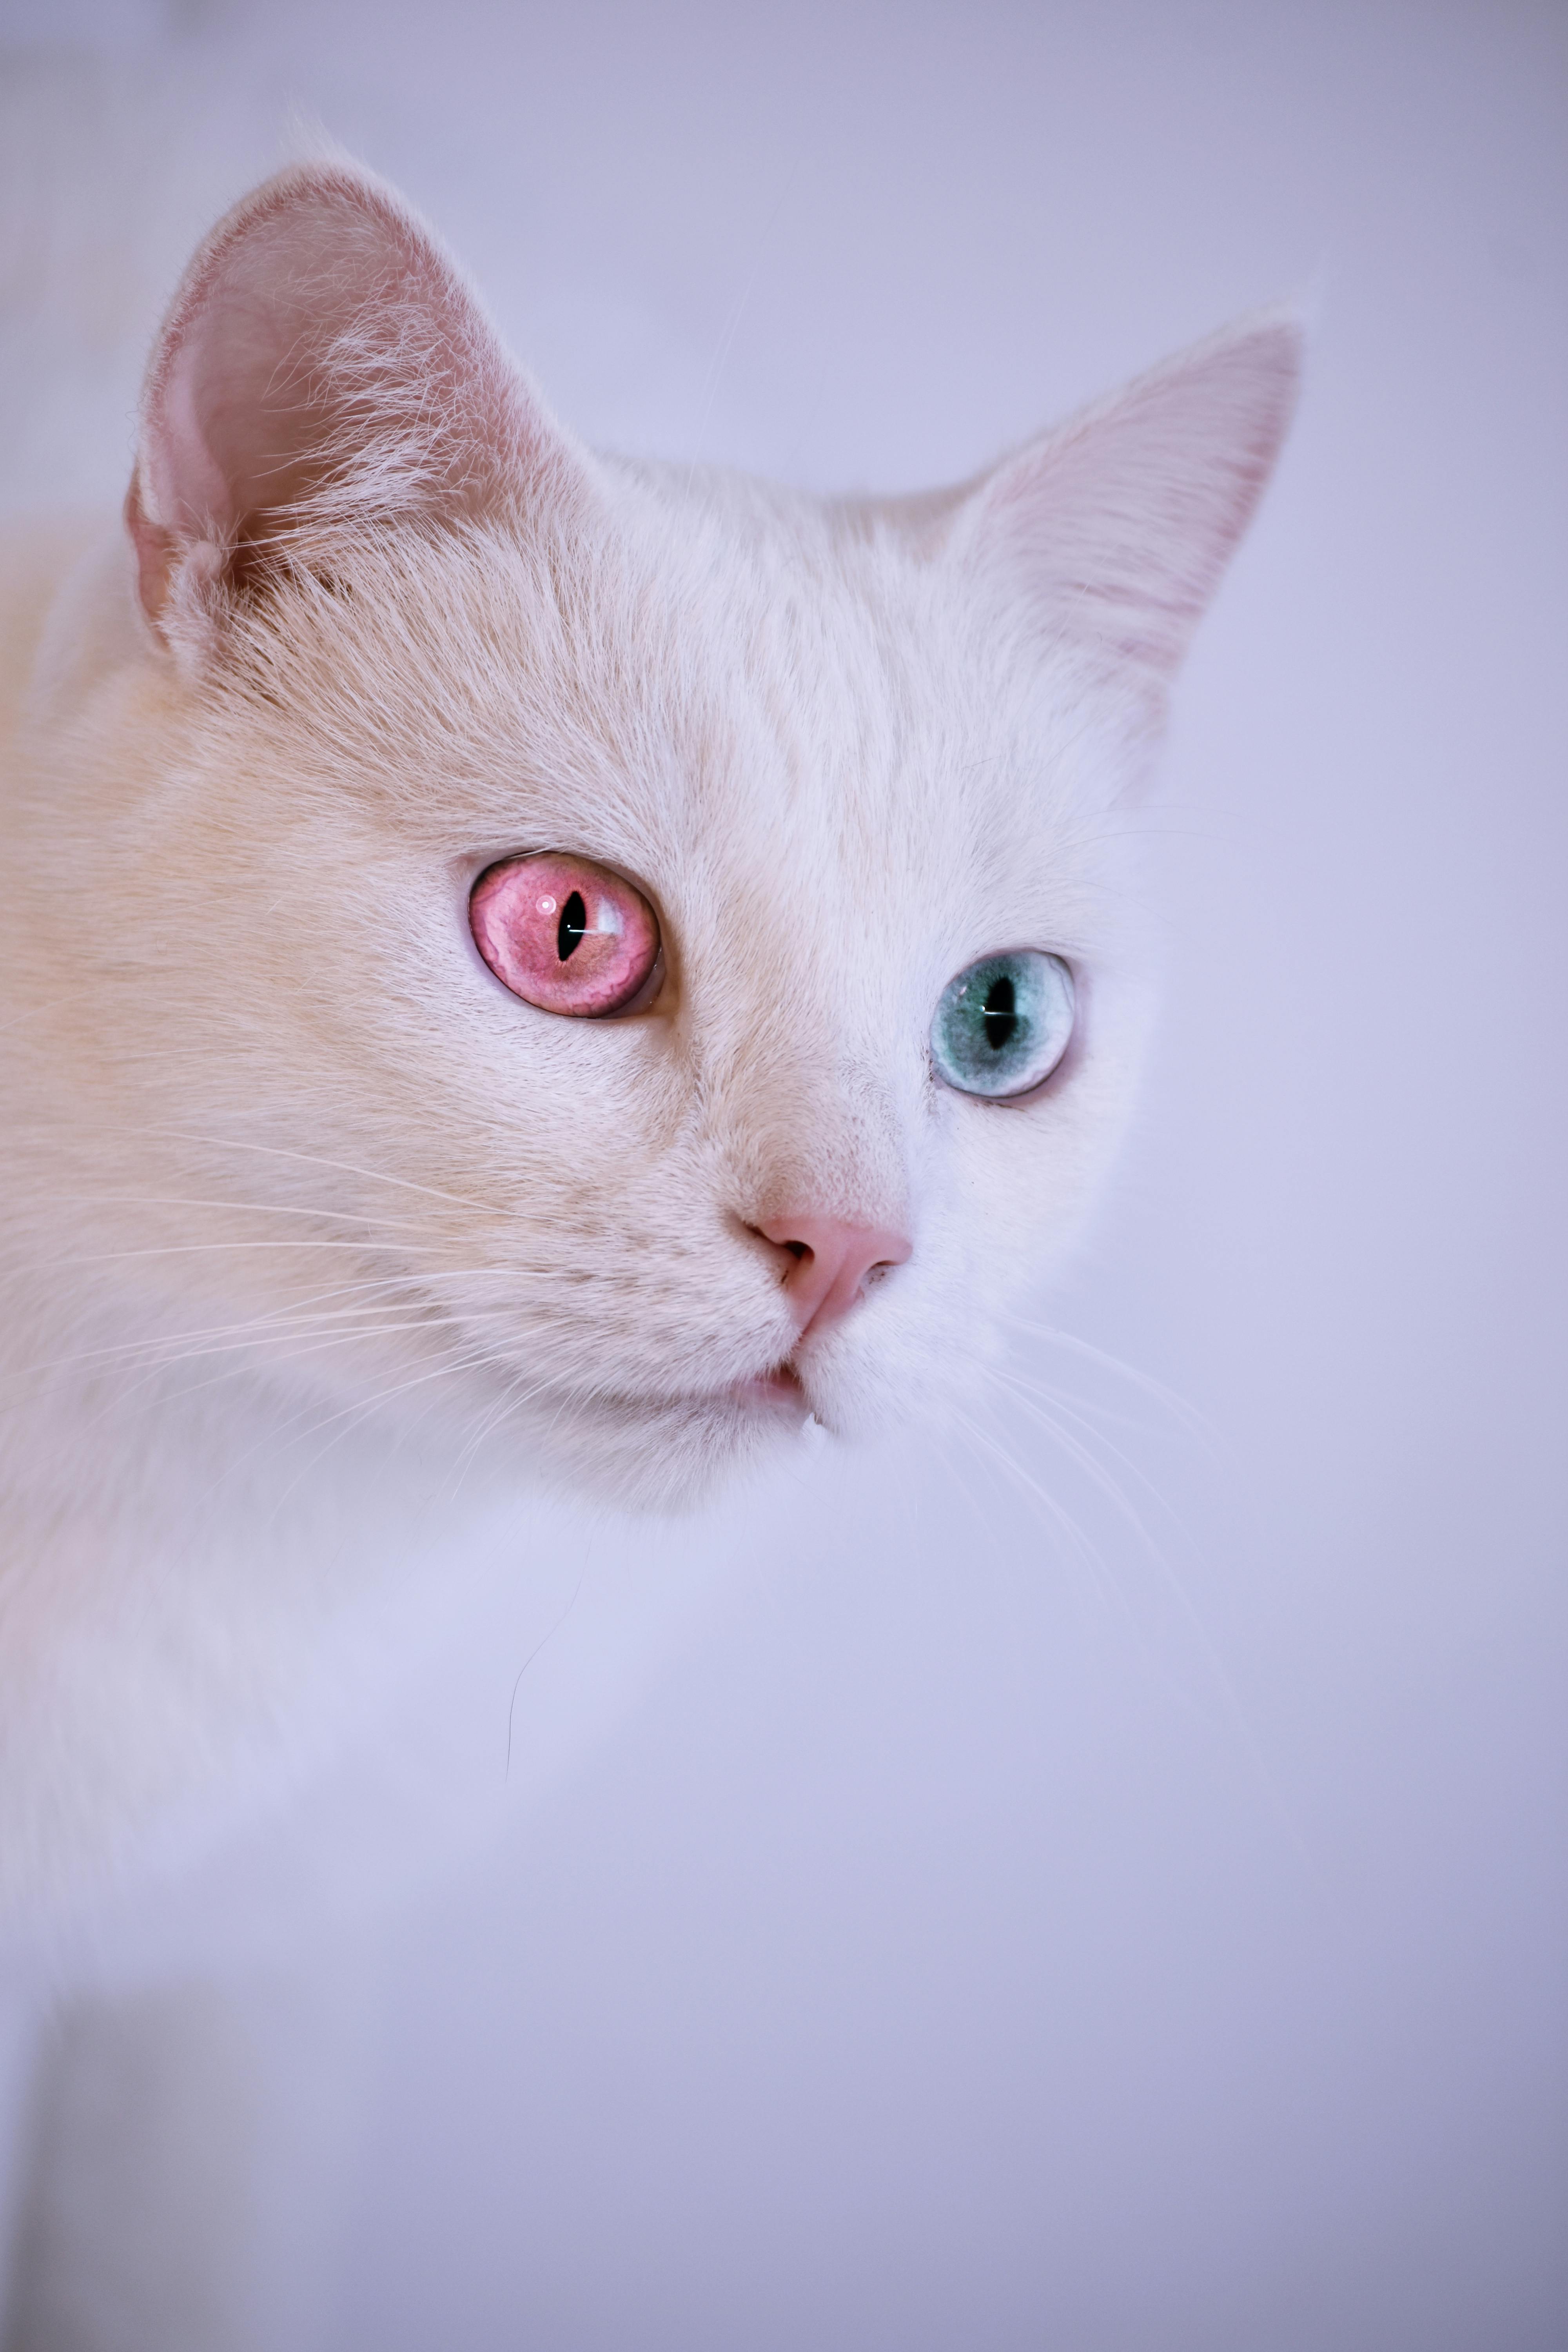 Cute White Cat 4K Phone iPhone Wallpaper 334a